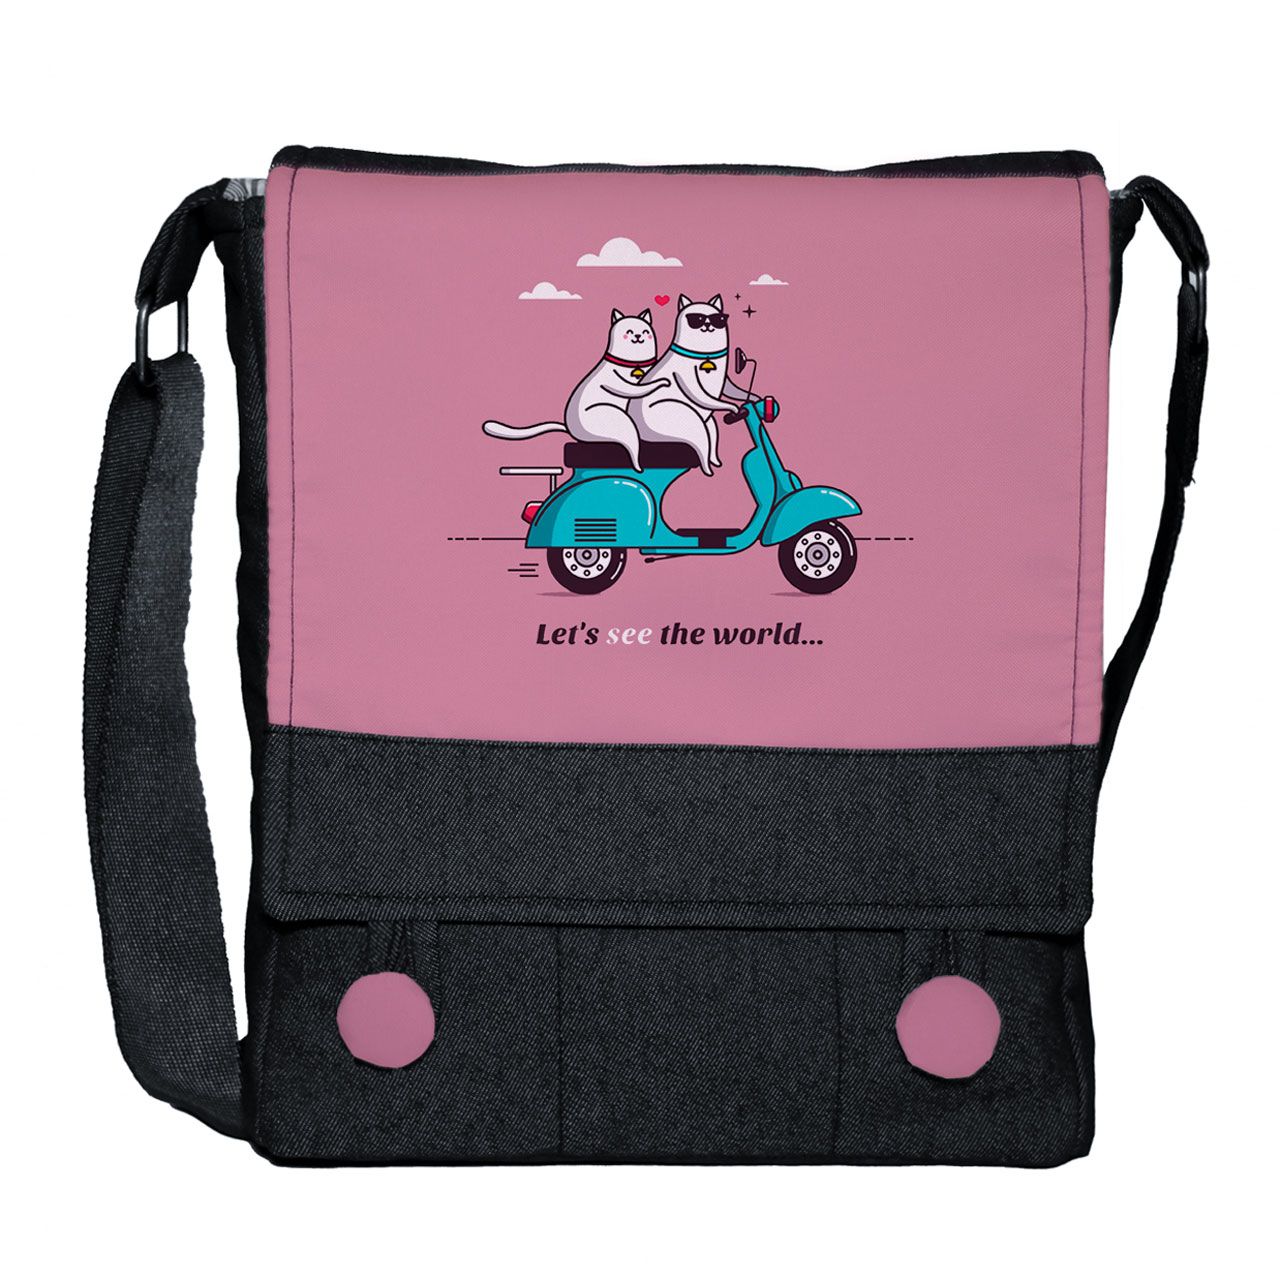 کیف دوشی دخترانه چی چاپ طرح گربه موتورسوار کد Vespa 65642 -  - 1